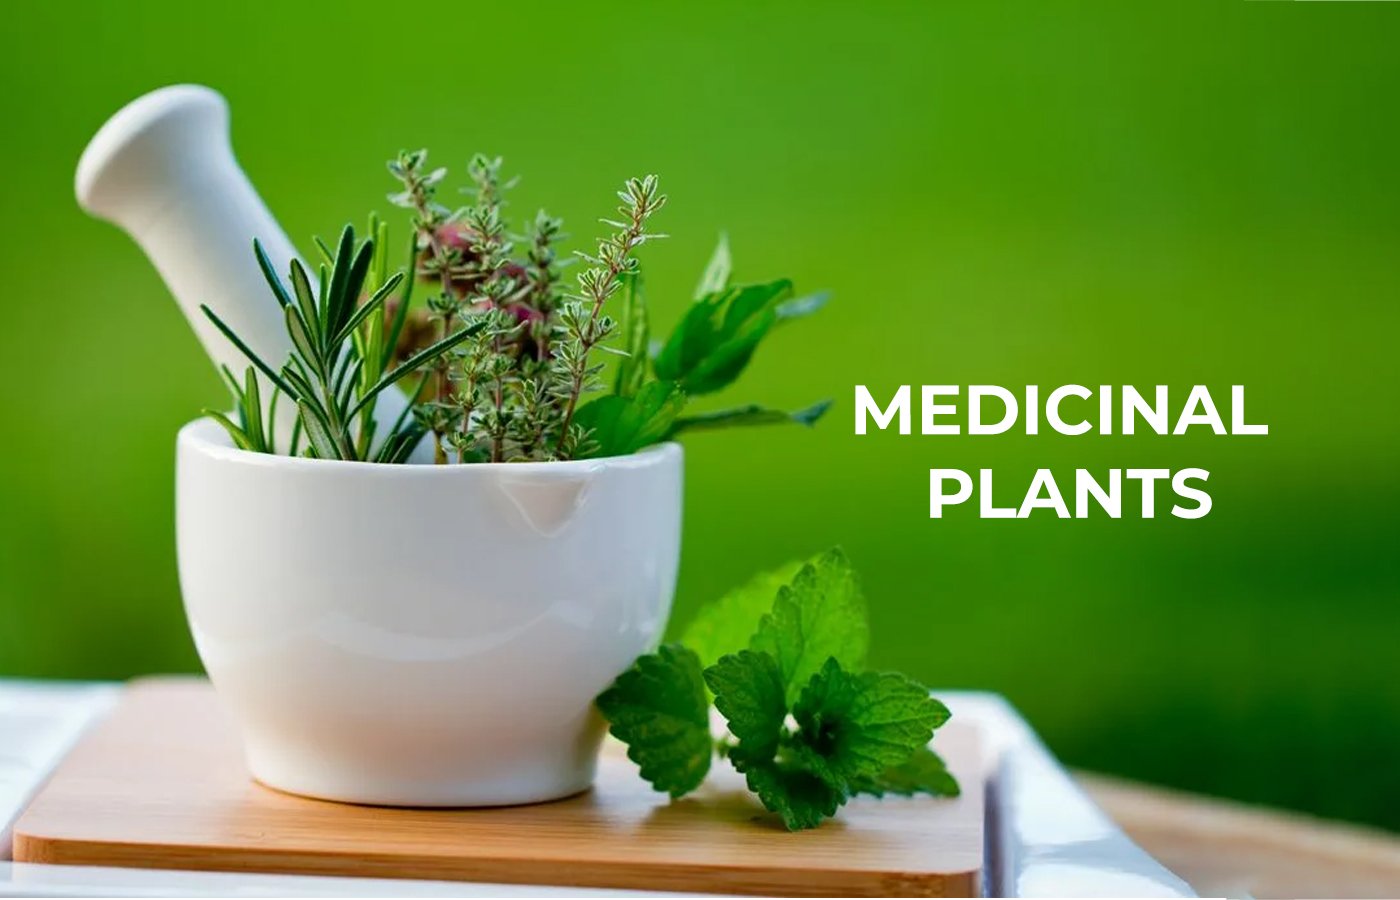 MEDICINAL PLANTS COVER